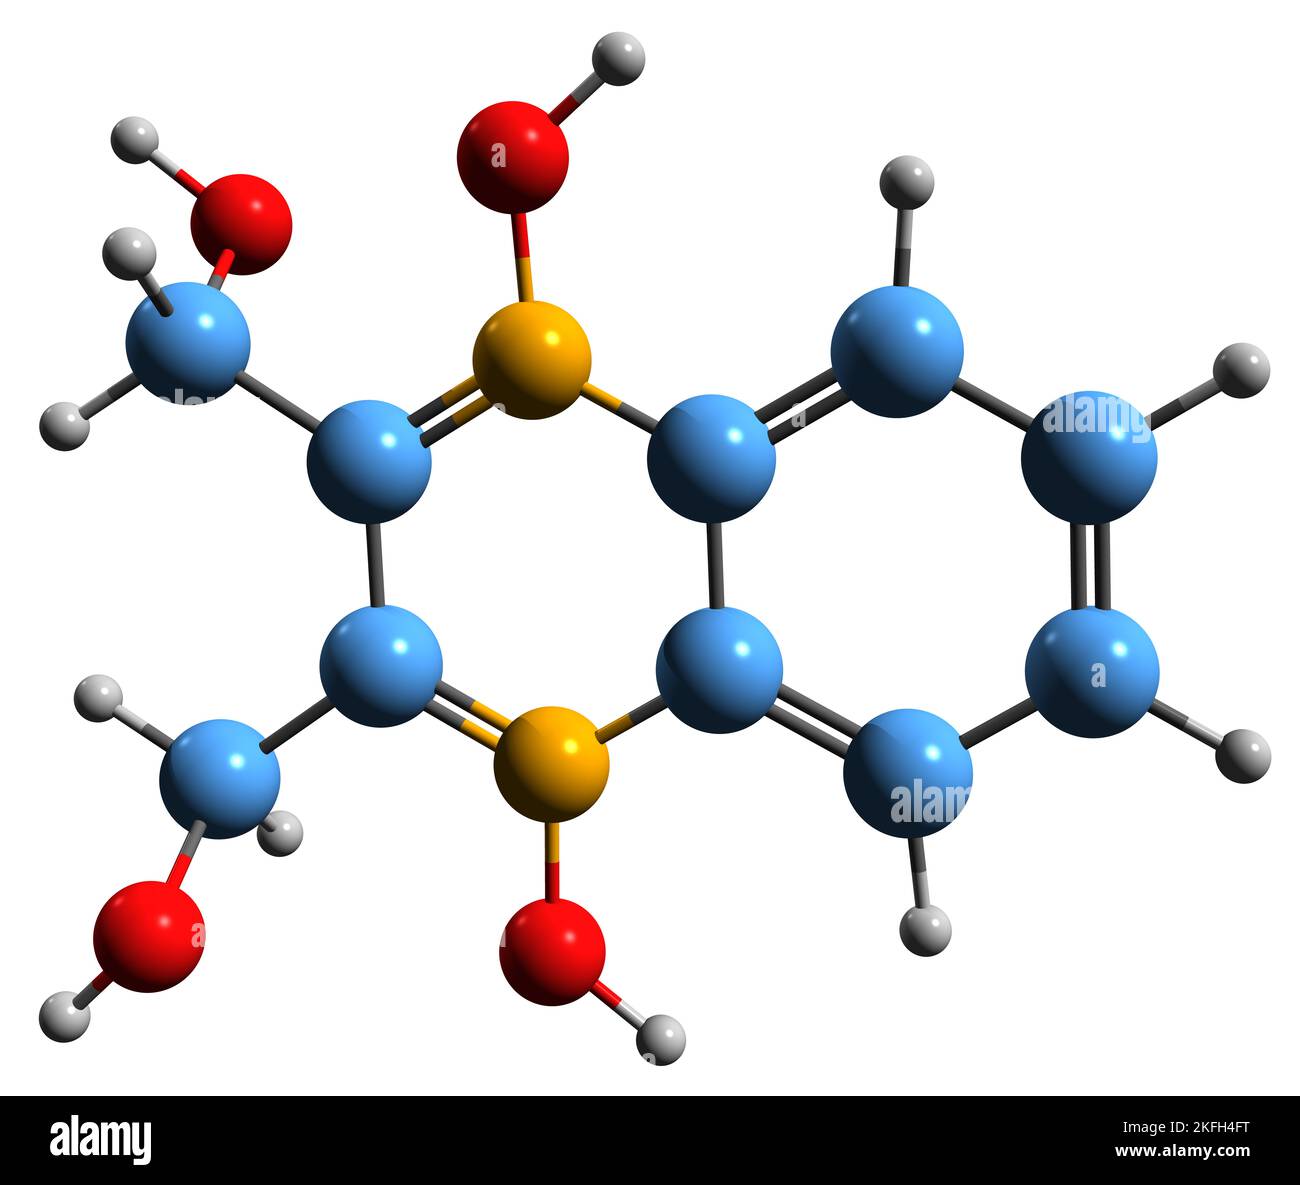 3D Bild der Skelettformel von Hydroxymethylchinoxylindioxid - molekulare chemische Struktur von Dioxidain auf weißem Hintergrund isoliert Stockfoto